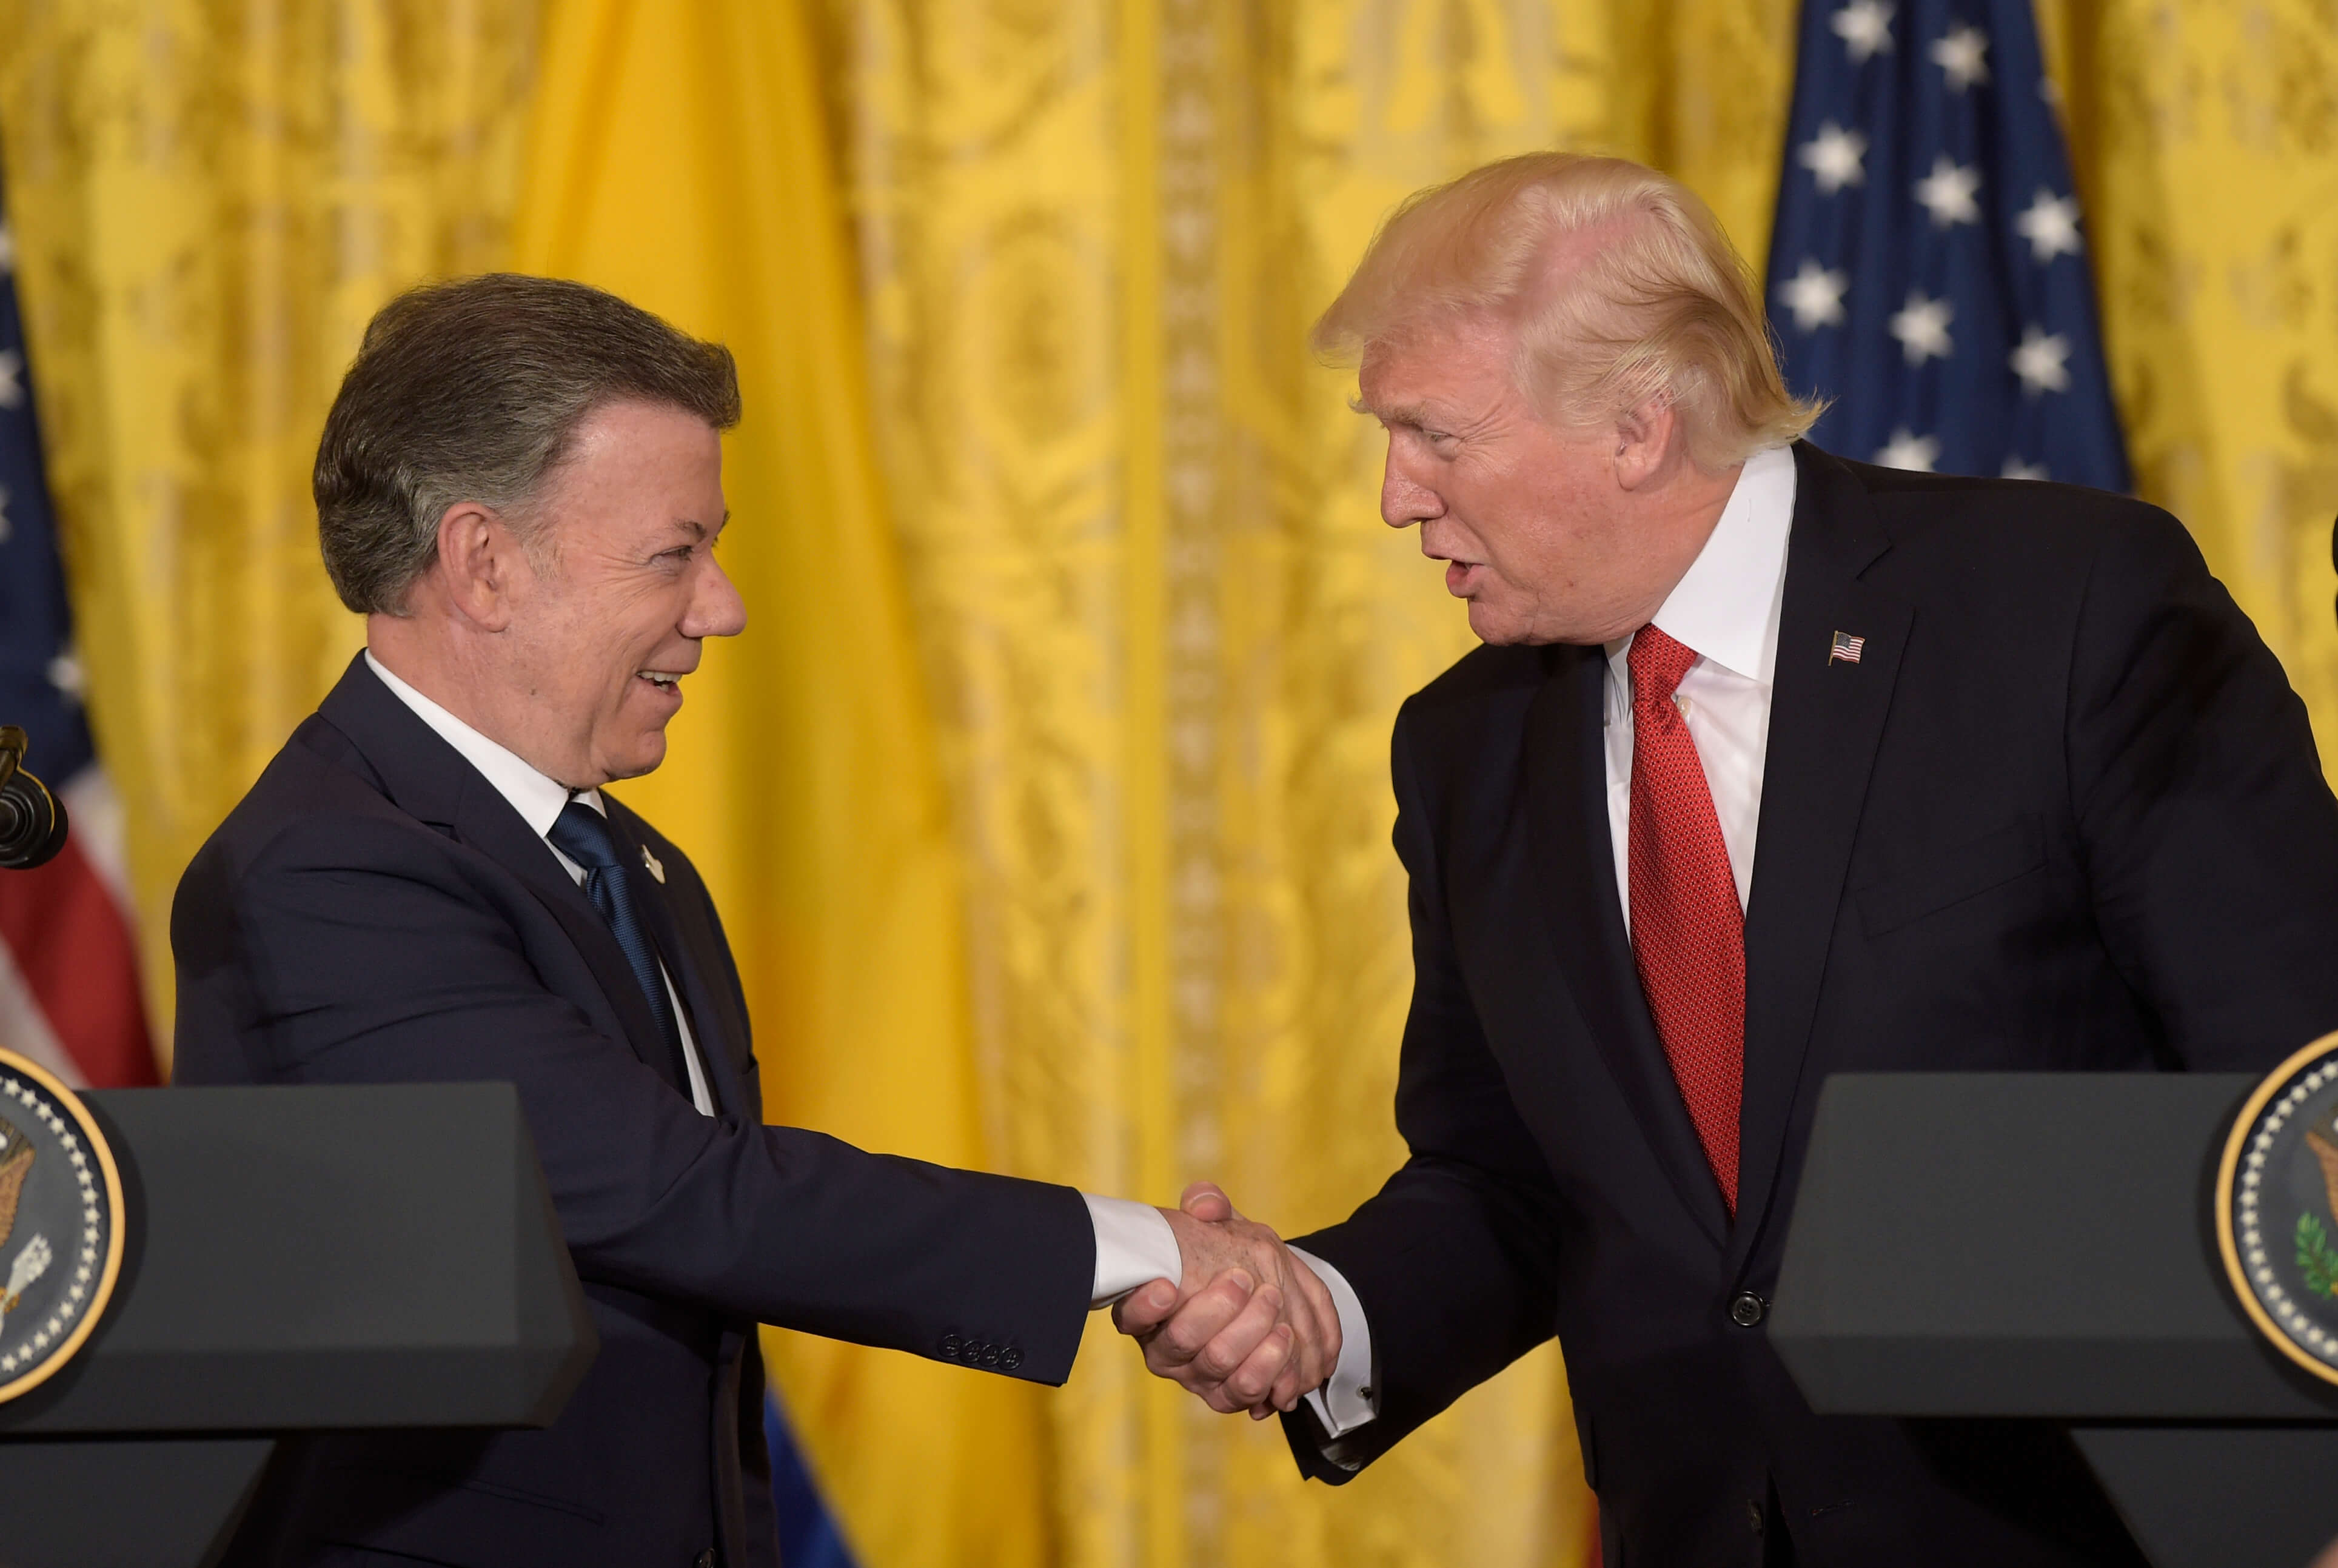 El presidente Donald Trump estrecha la mano con su homólogo colombiano, Juan Manuel Santos, durante una conferencia de prensa en Washington. (AP)